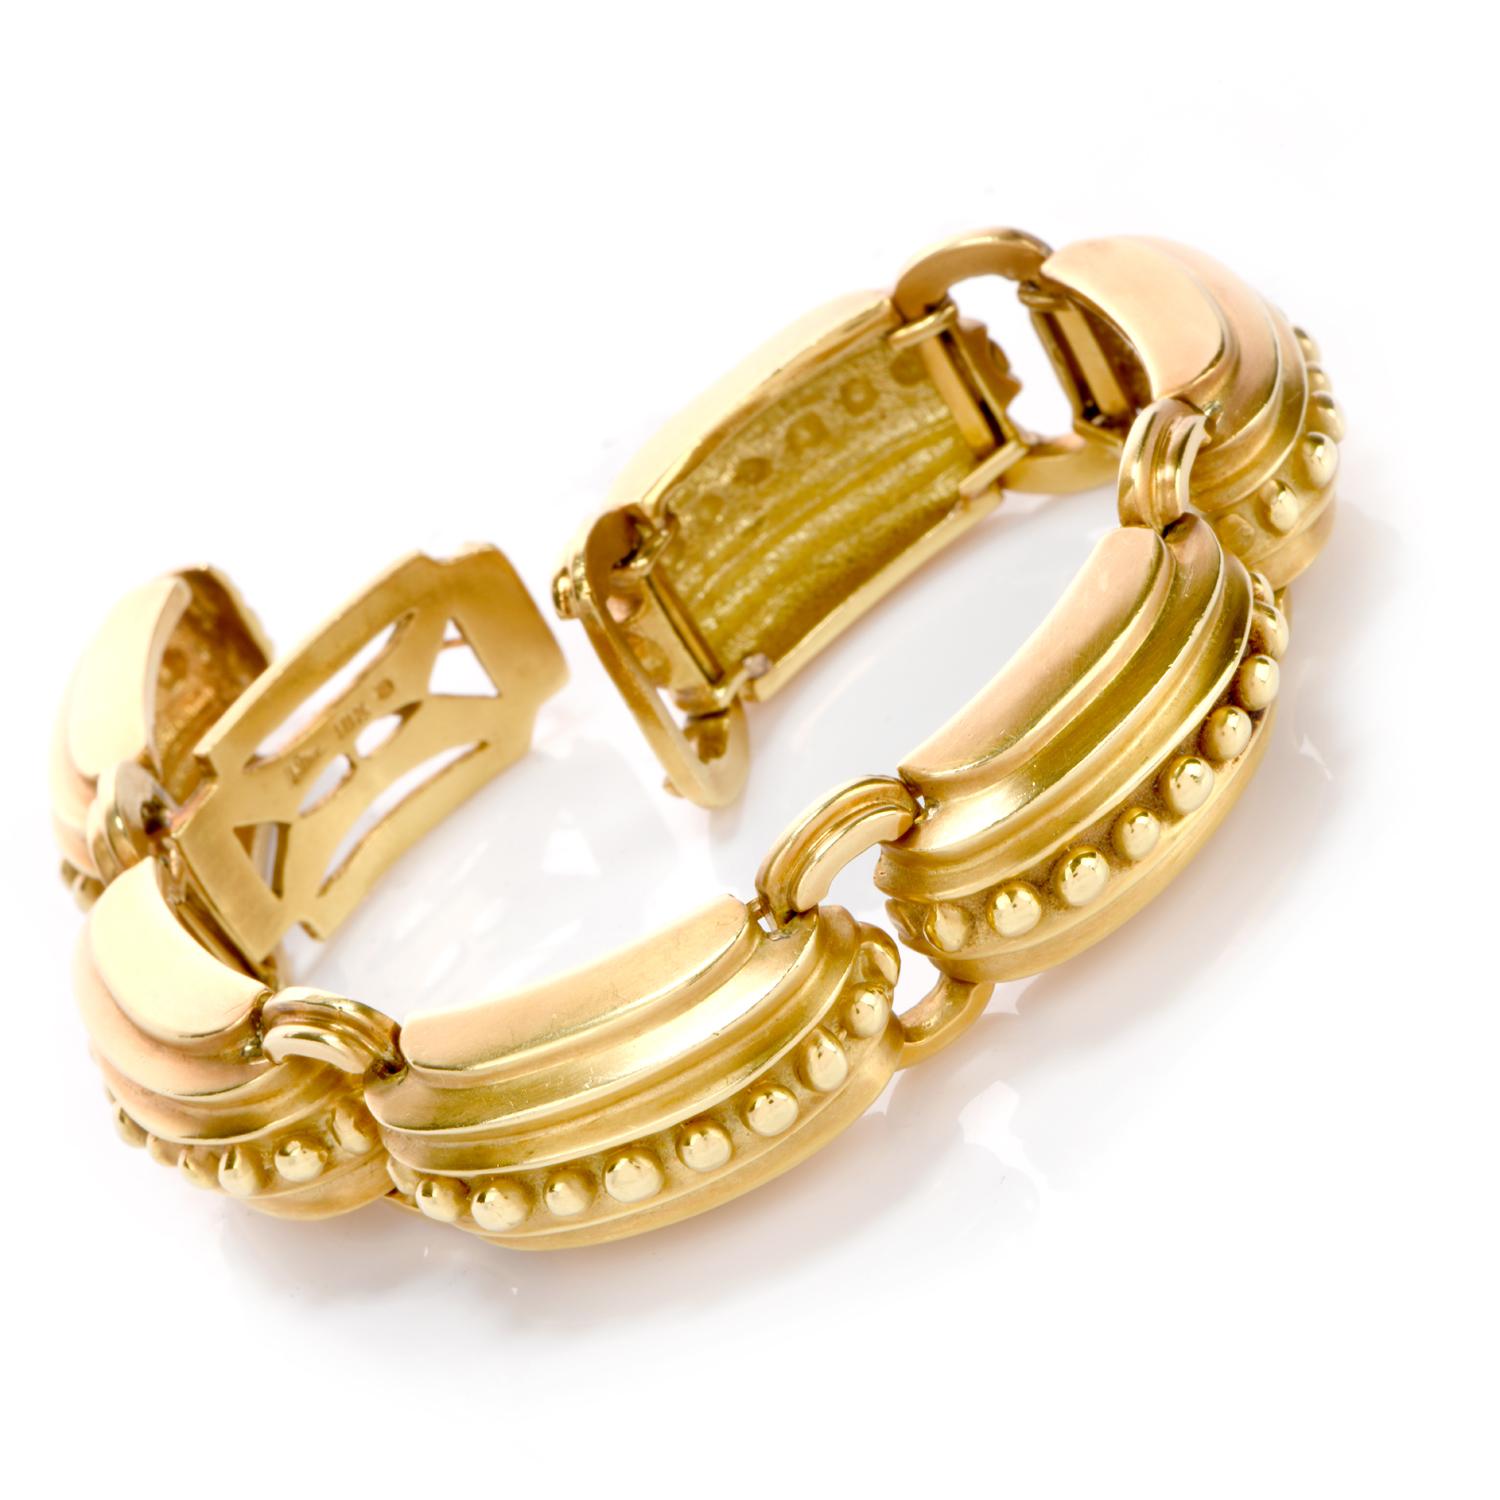 Ce magnifique bracelet Marlend Stowe a été réalisé en 86,6 grammes d'or vert massif 18K. Chaque maillon offre un élément nautique car il est nervuré de l'extérieur, chaque arête étant plus haute que la précédente.  

De grosses perles en or poli